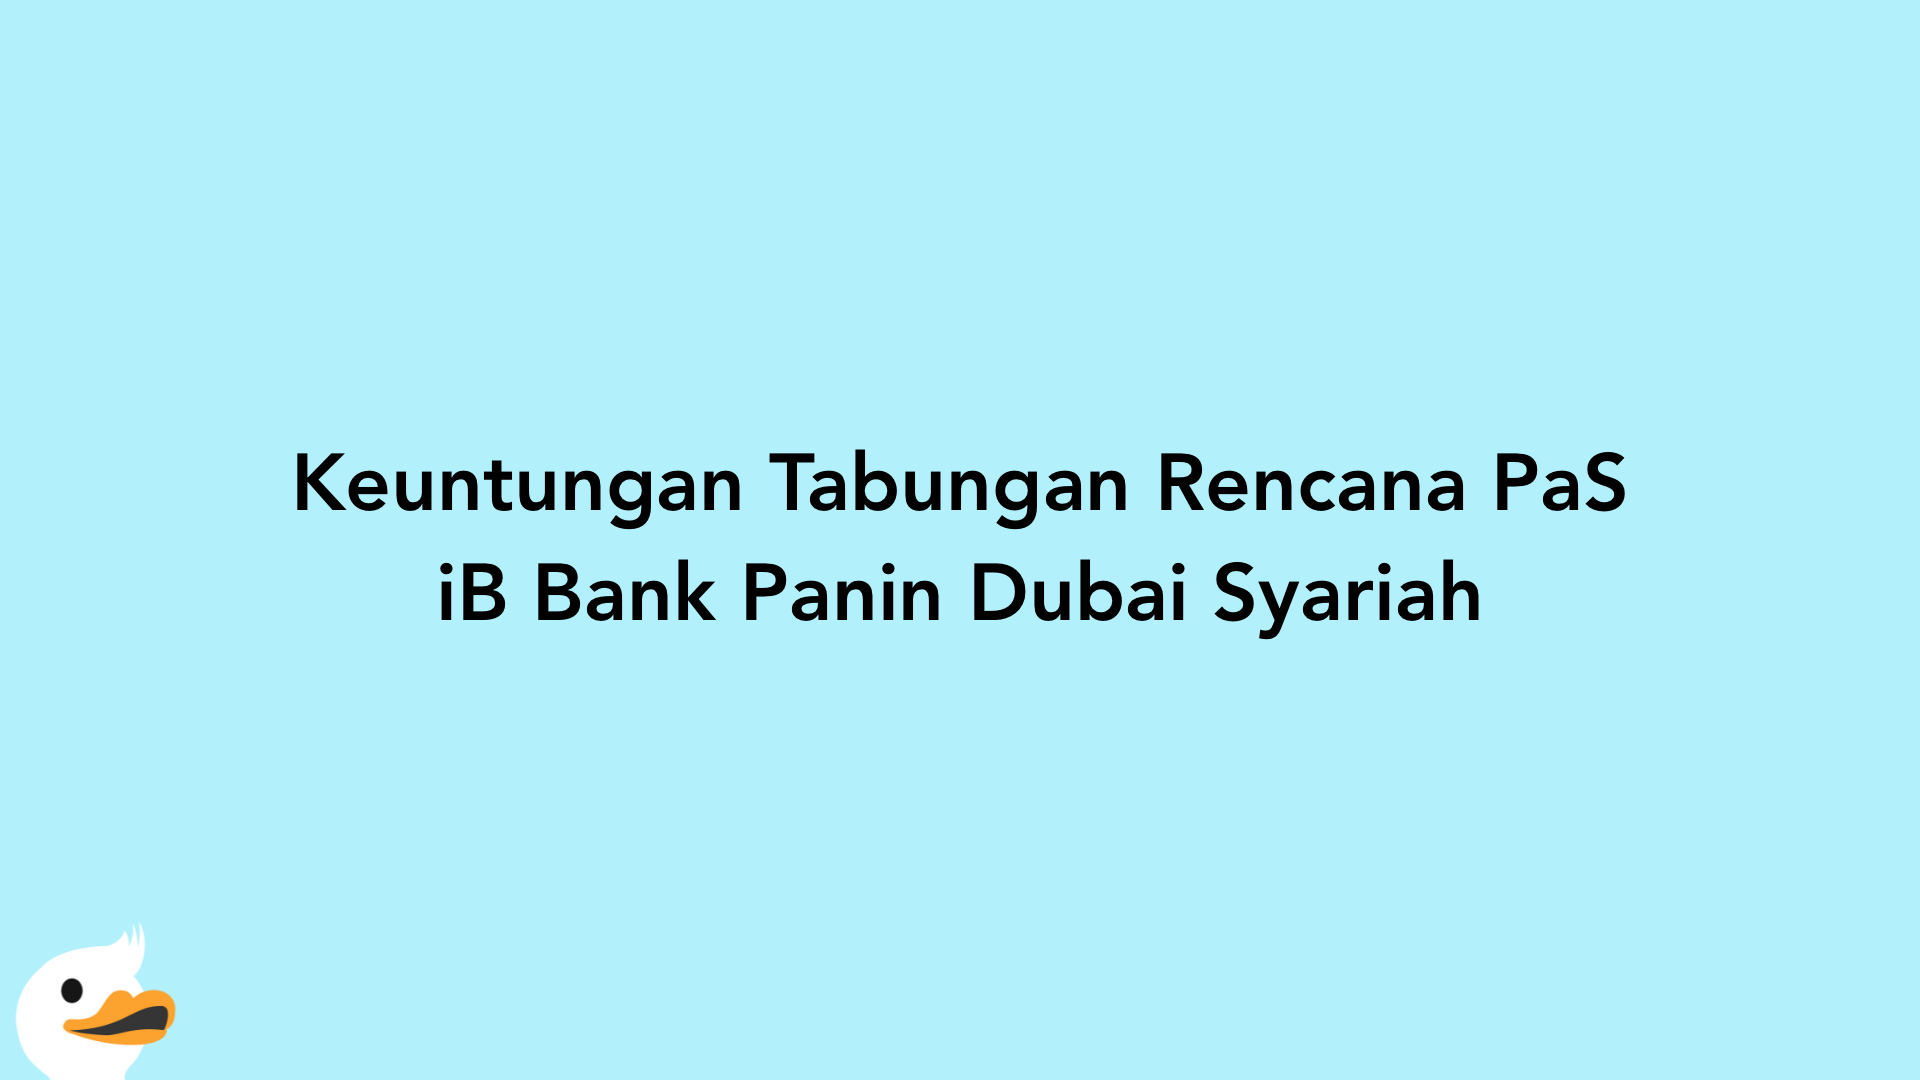 Keuntungan Tabungan Rencana PaS iB Bank Panin Dubai Syariah